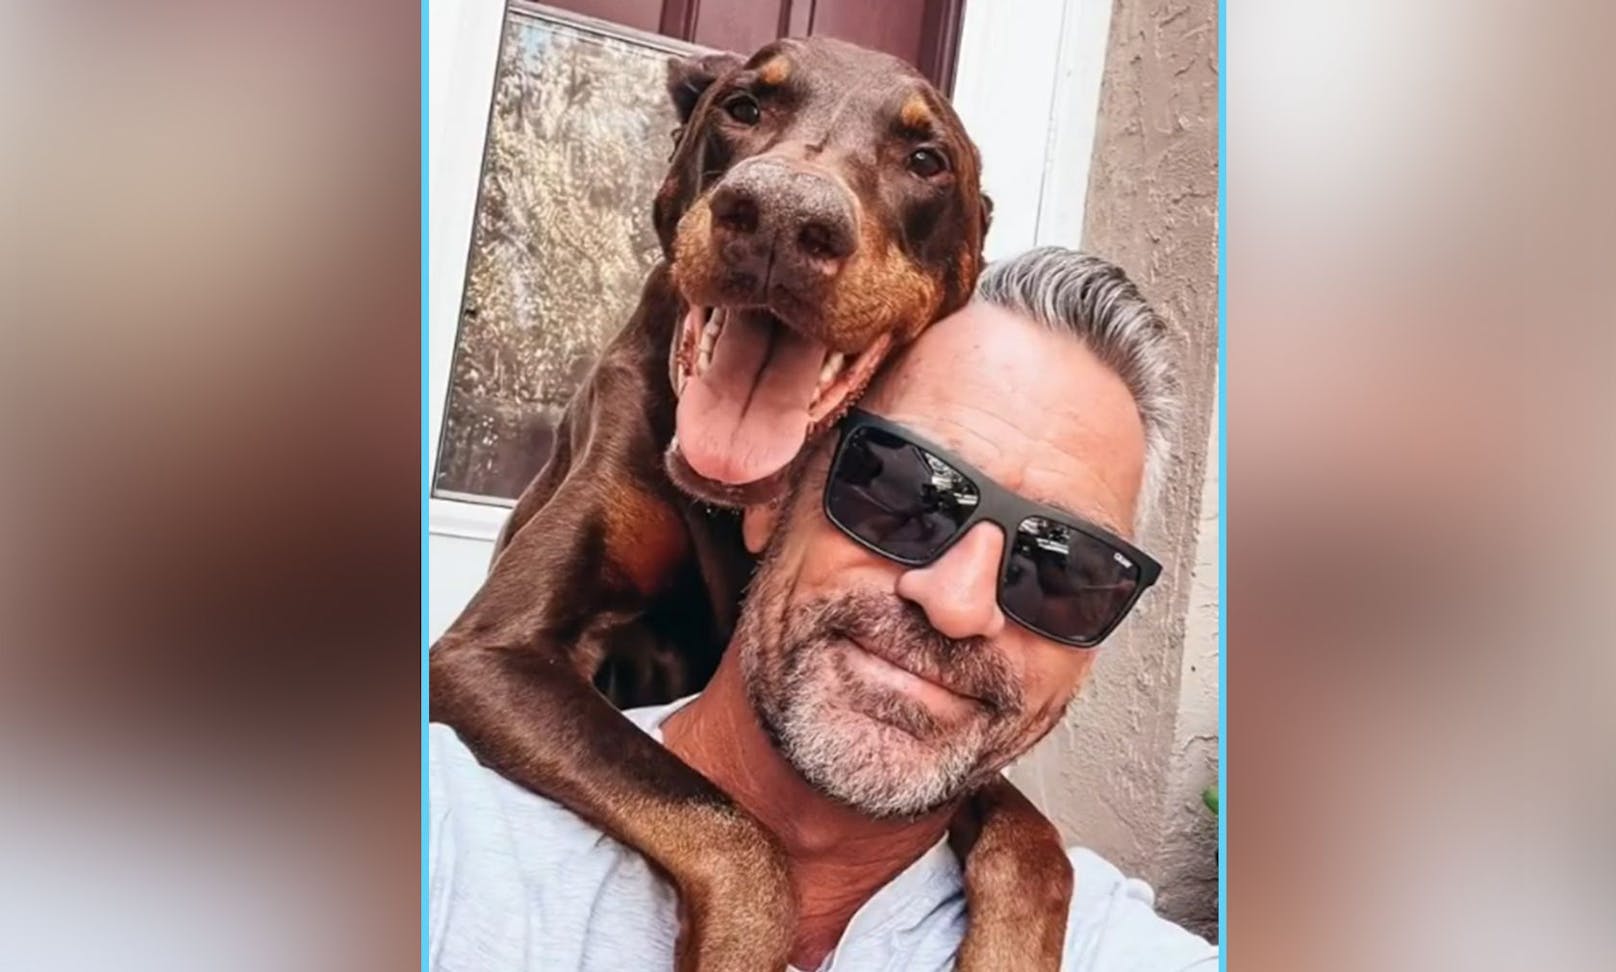 Besitzer Charles Lindsey war zu diesem Zeitpunkt nicht klar, dass dies das letzte Selfie mit seiner Dobermannhündin "Ruby" sein würde.